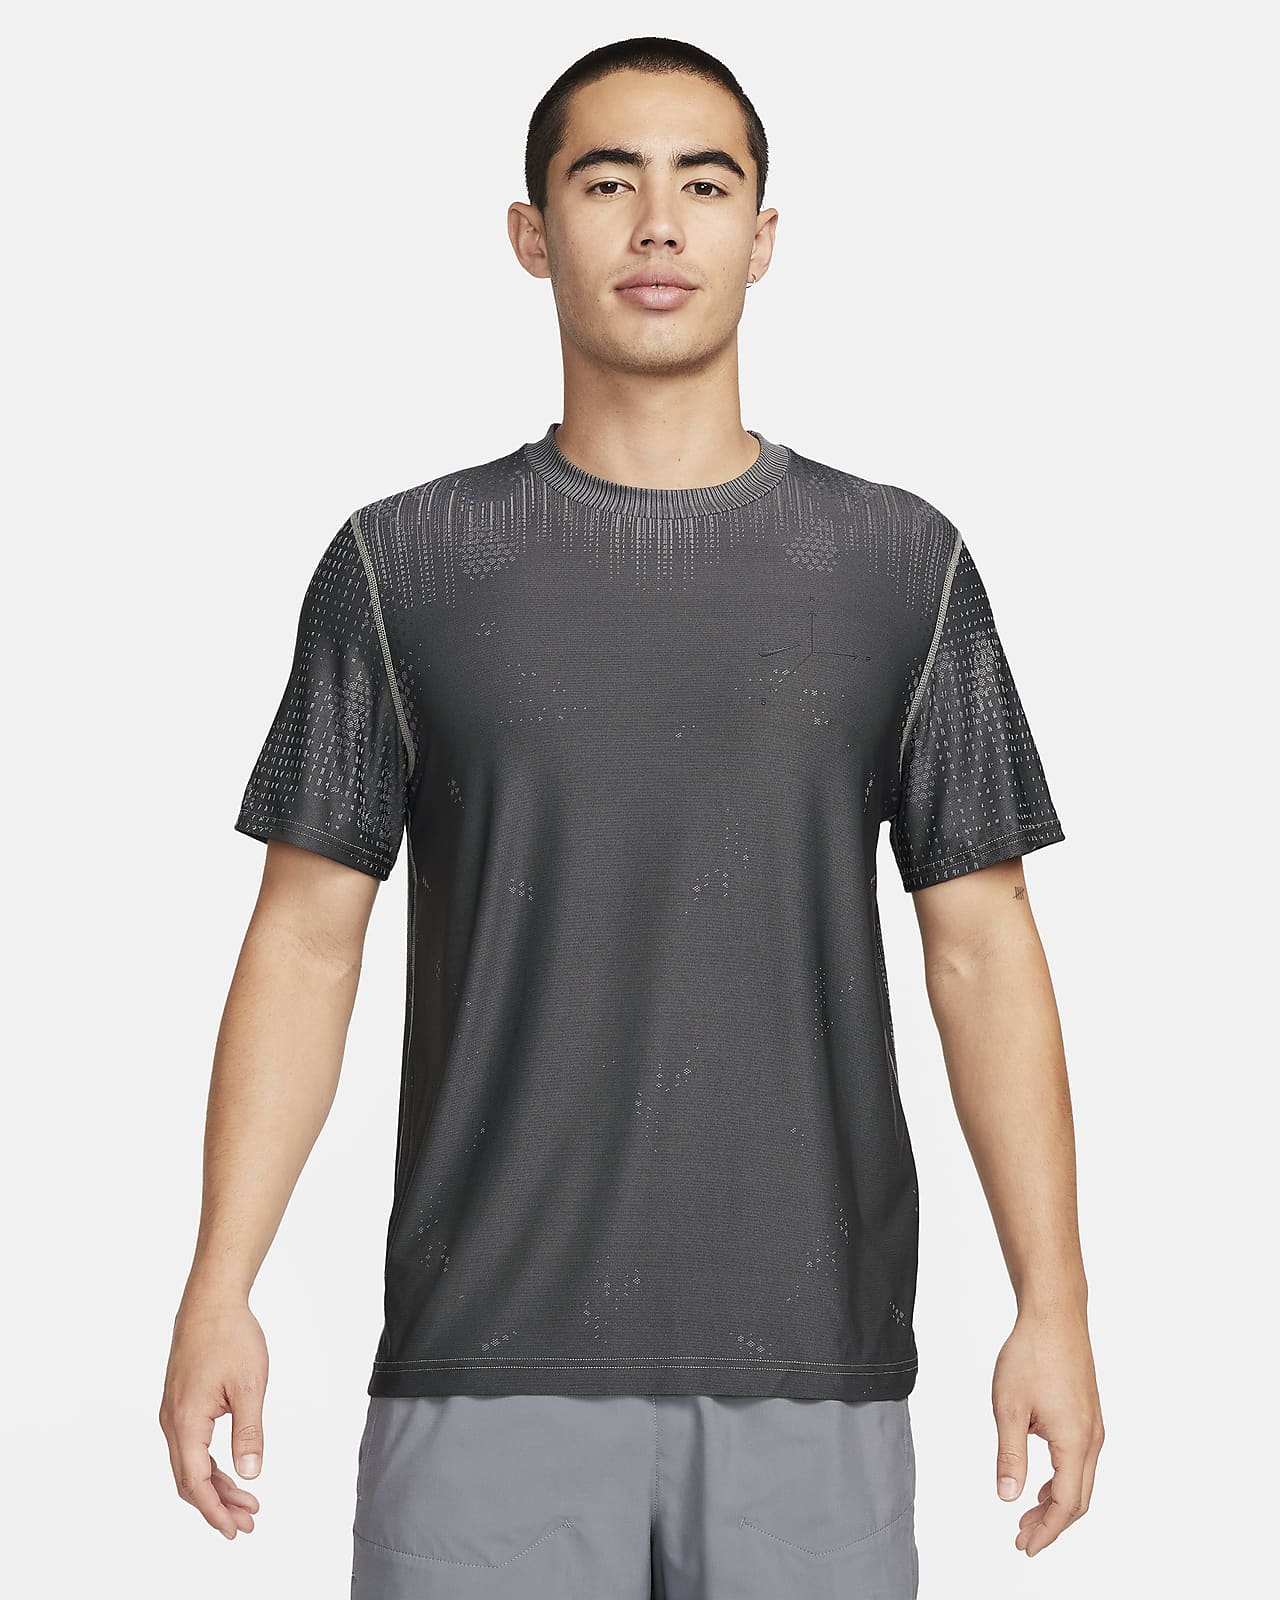 Nike A.P.S. Męska uniwersalna koszulka z krótkim rękawem Dri-FIT ADV